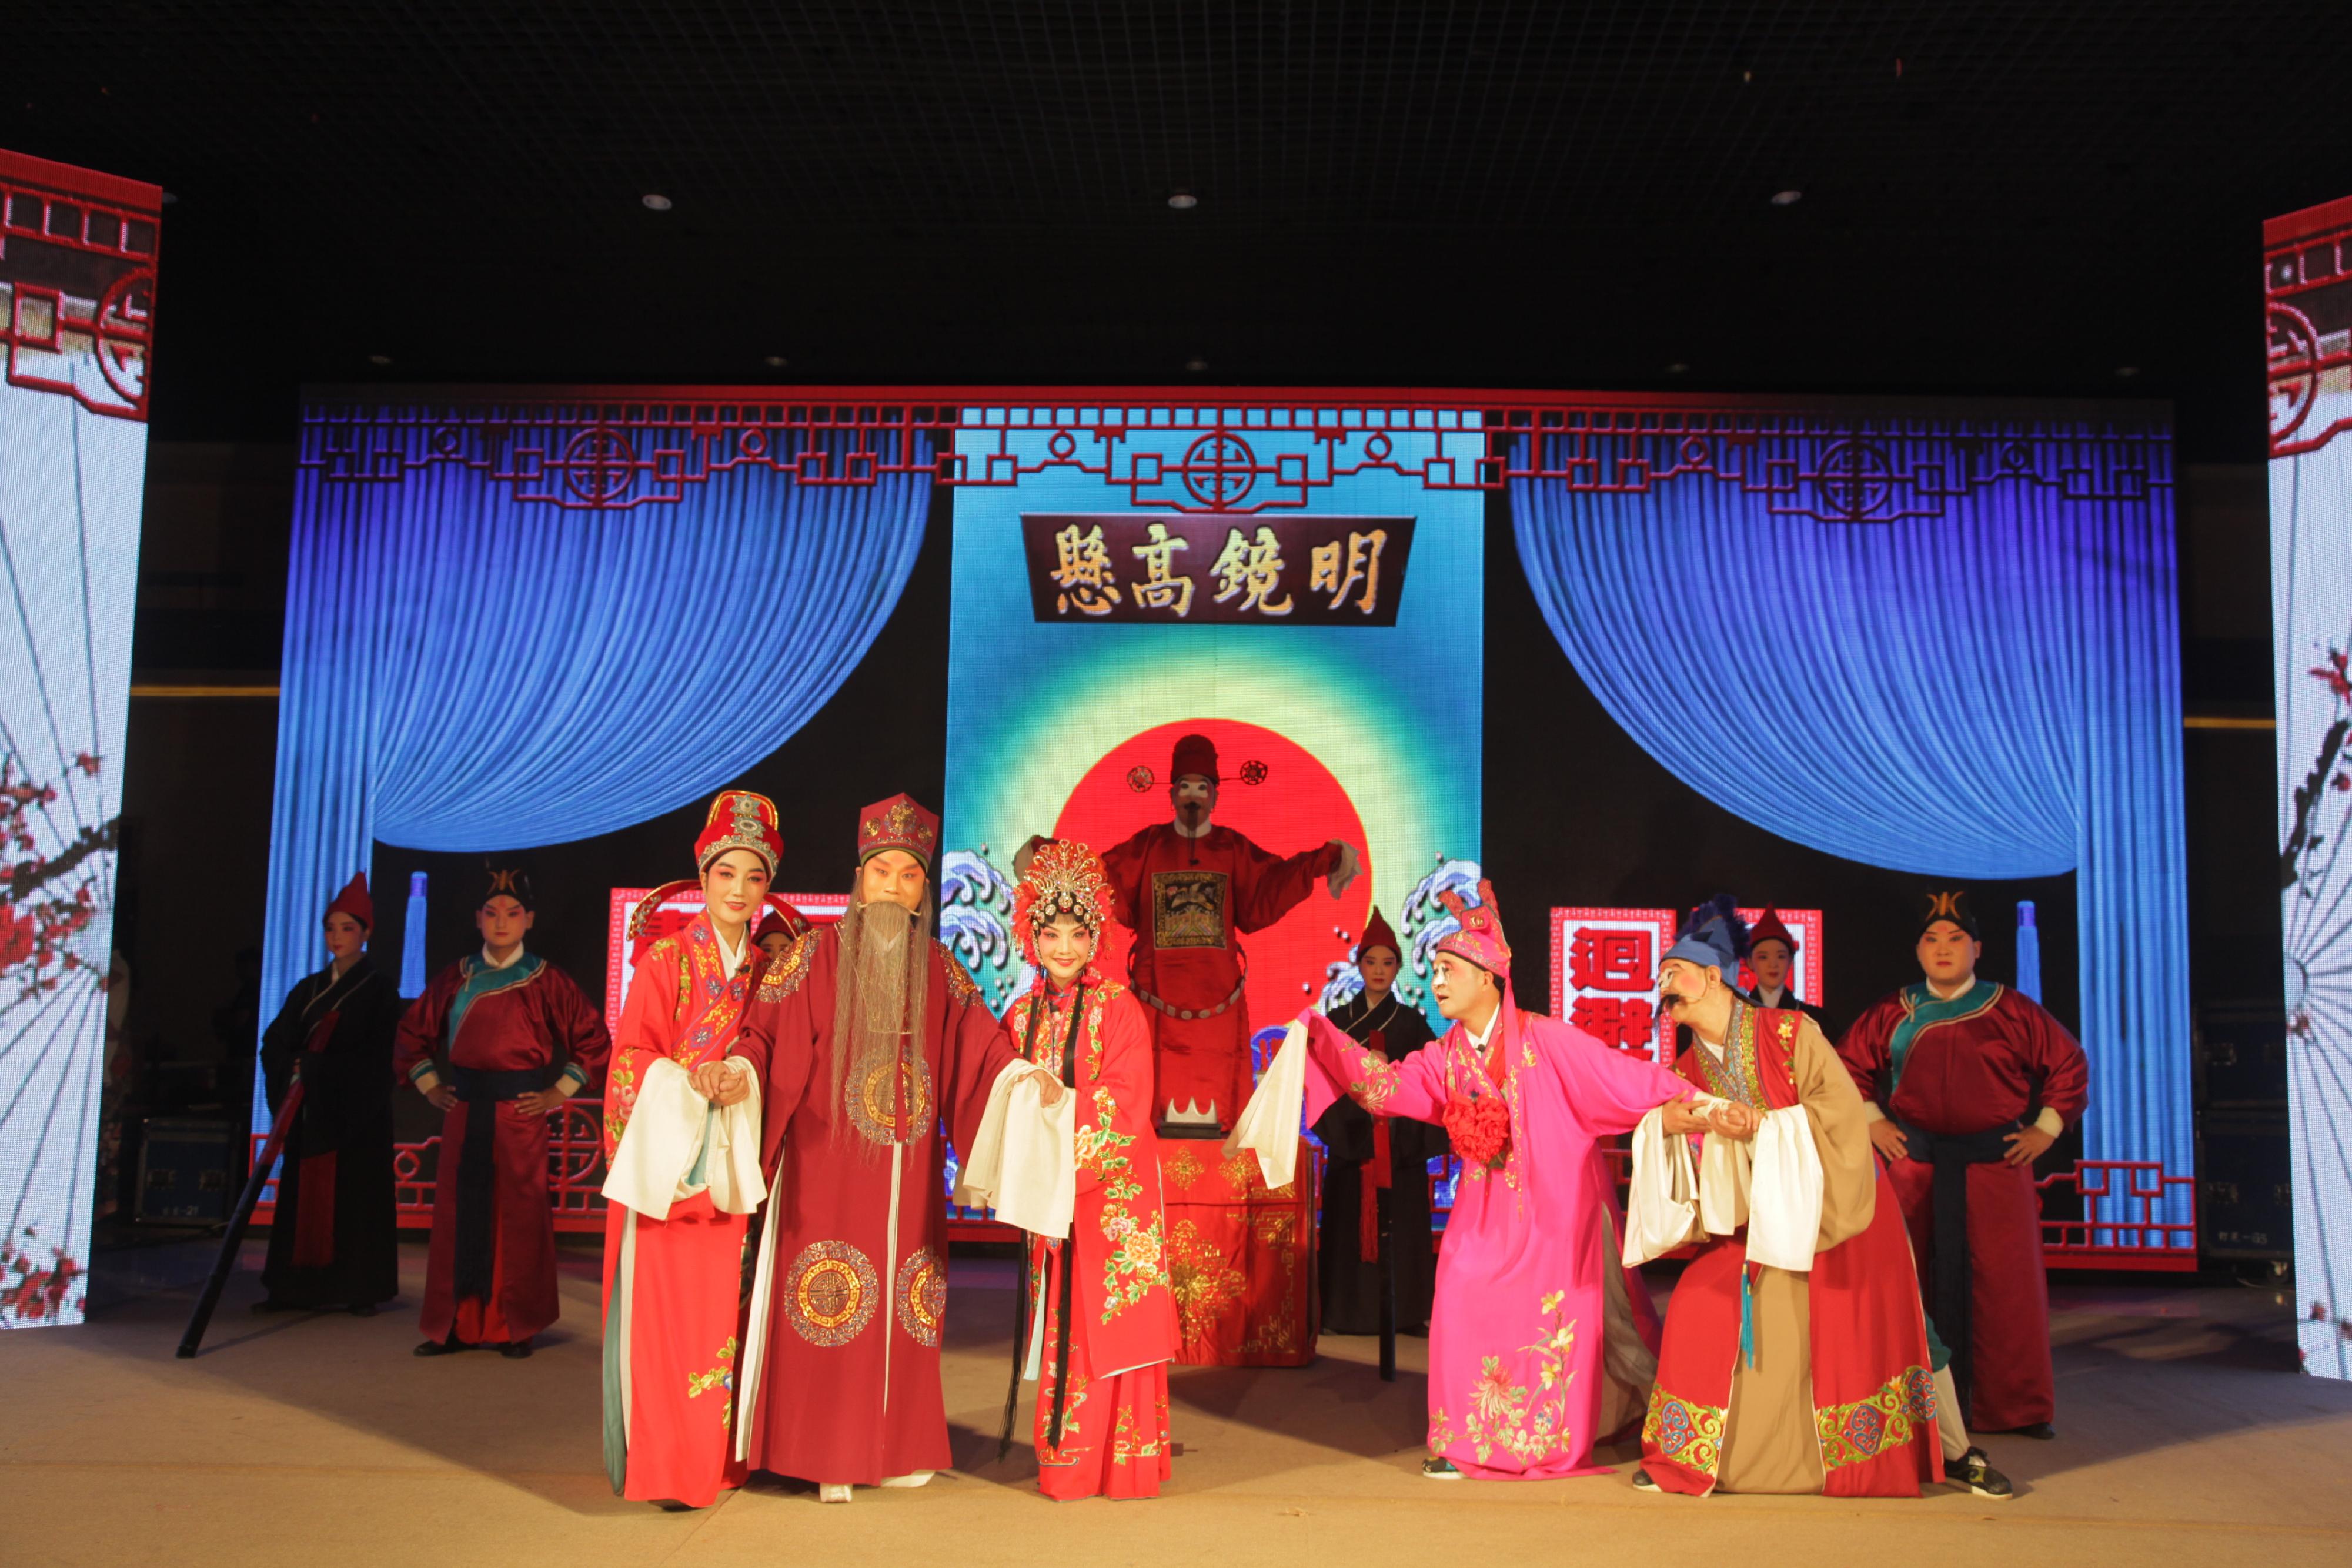 康樂及文化事務署邀得河南省曲劇藝術保護傳承中心六月首度來港，於今年中國戲曲節演出三場經典劇目。圖為《風雪配》劇照。